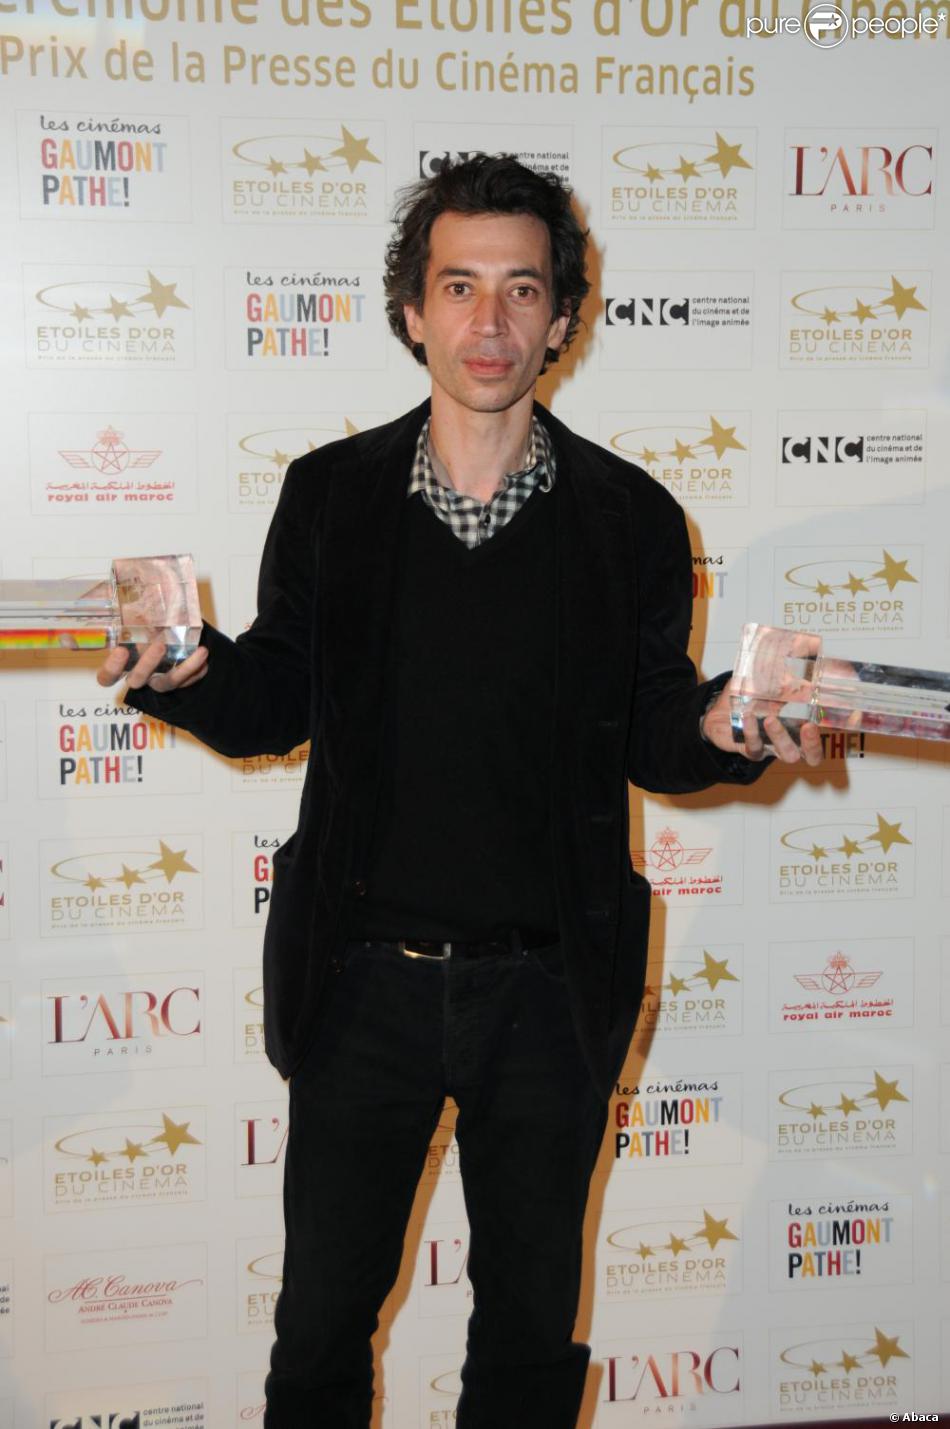 Eric Elmosnino lors des 12e Etoiles du cinéma au cinéma Gaumont-Marignan le 21 mars 2011 à Paris